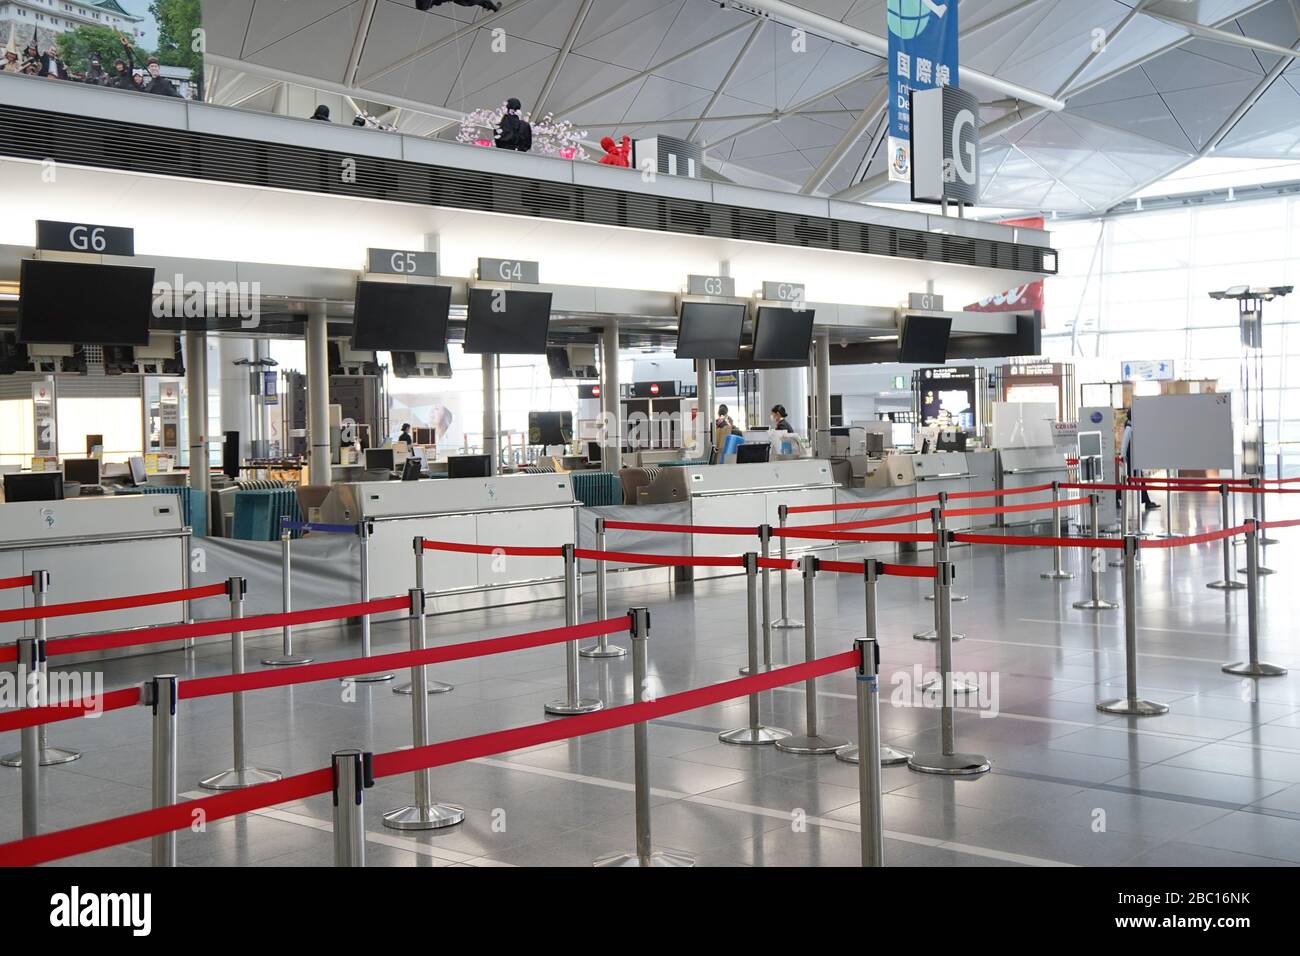 Vue d'un niveau de départ déserté de l'aéroport international Chubu Centrair.le Japon étend les interdictions d'entrée aux voyageurs de 73 pays et régions le 3 avril, y compris les Amériques, le Royaume-Uni et l'Afrique en raison d'une escalade des infections mondiales de coronavirus. Banque D'Images